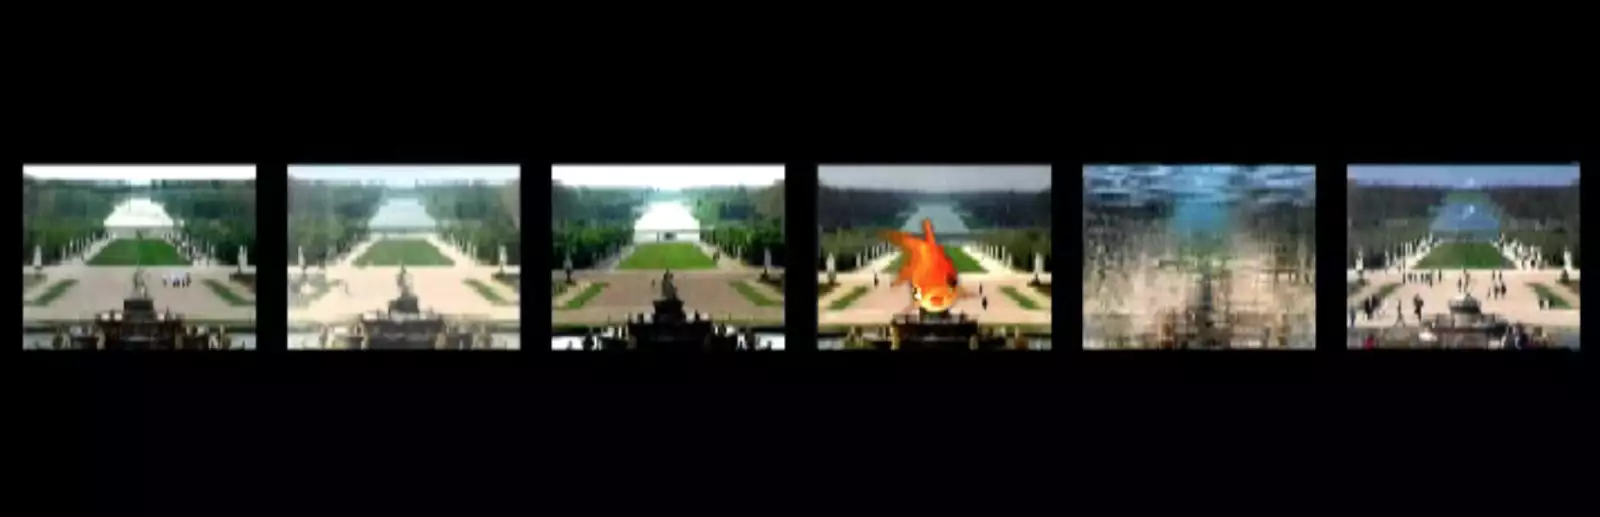 《凡爾賽花園》，錄像，ntsc，彩色，有聲，3分10秒，2005-2006年。